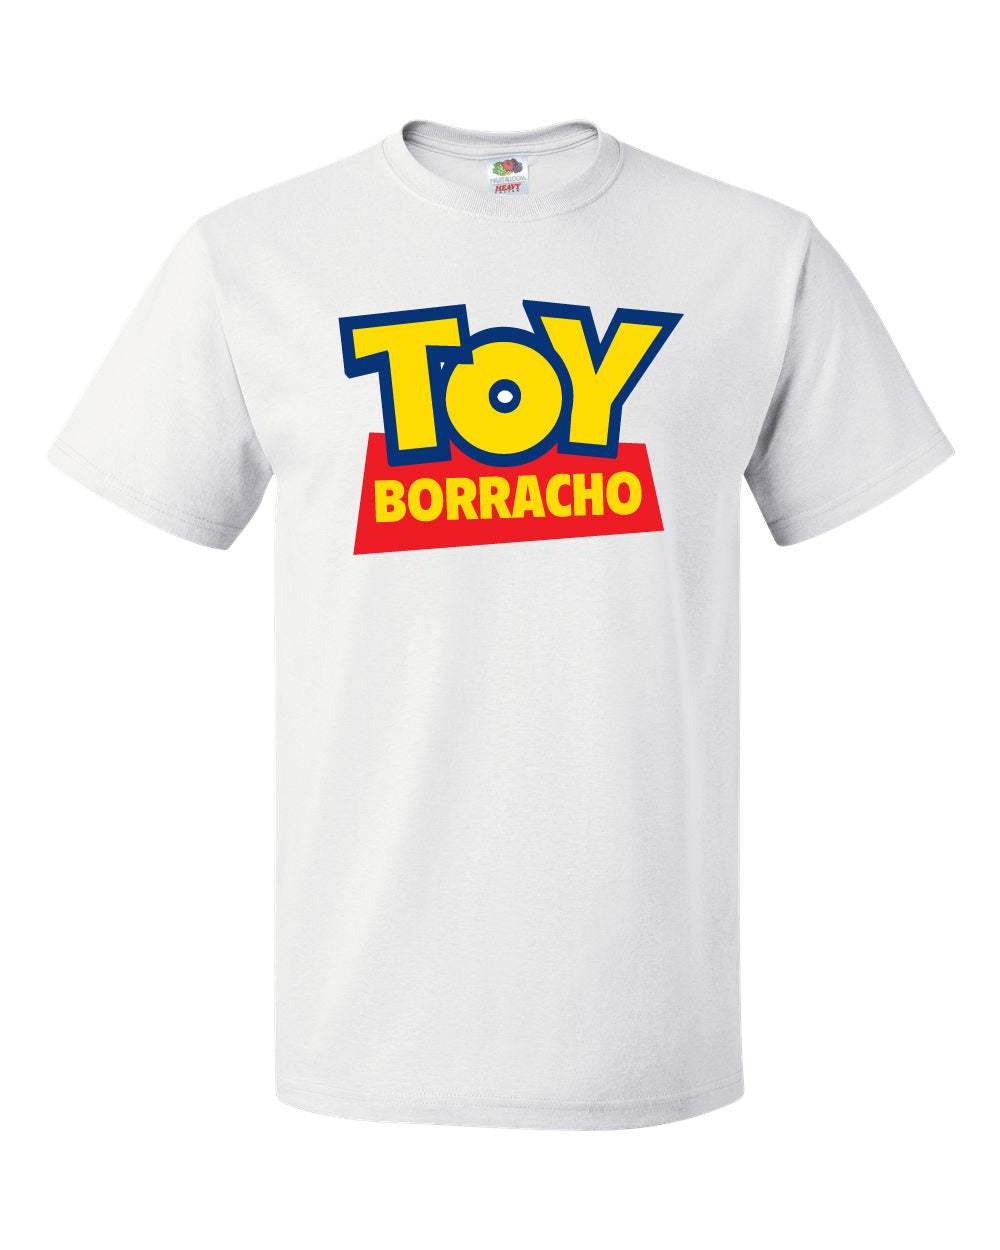 Toy Borracho Shirt - White Tee - Cotton Men